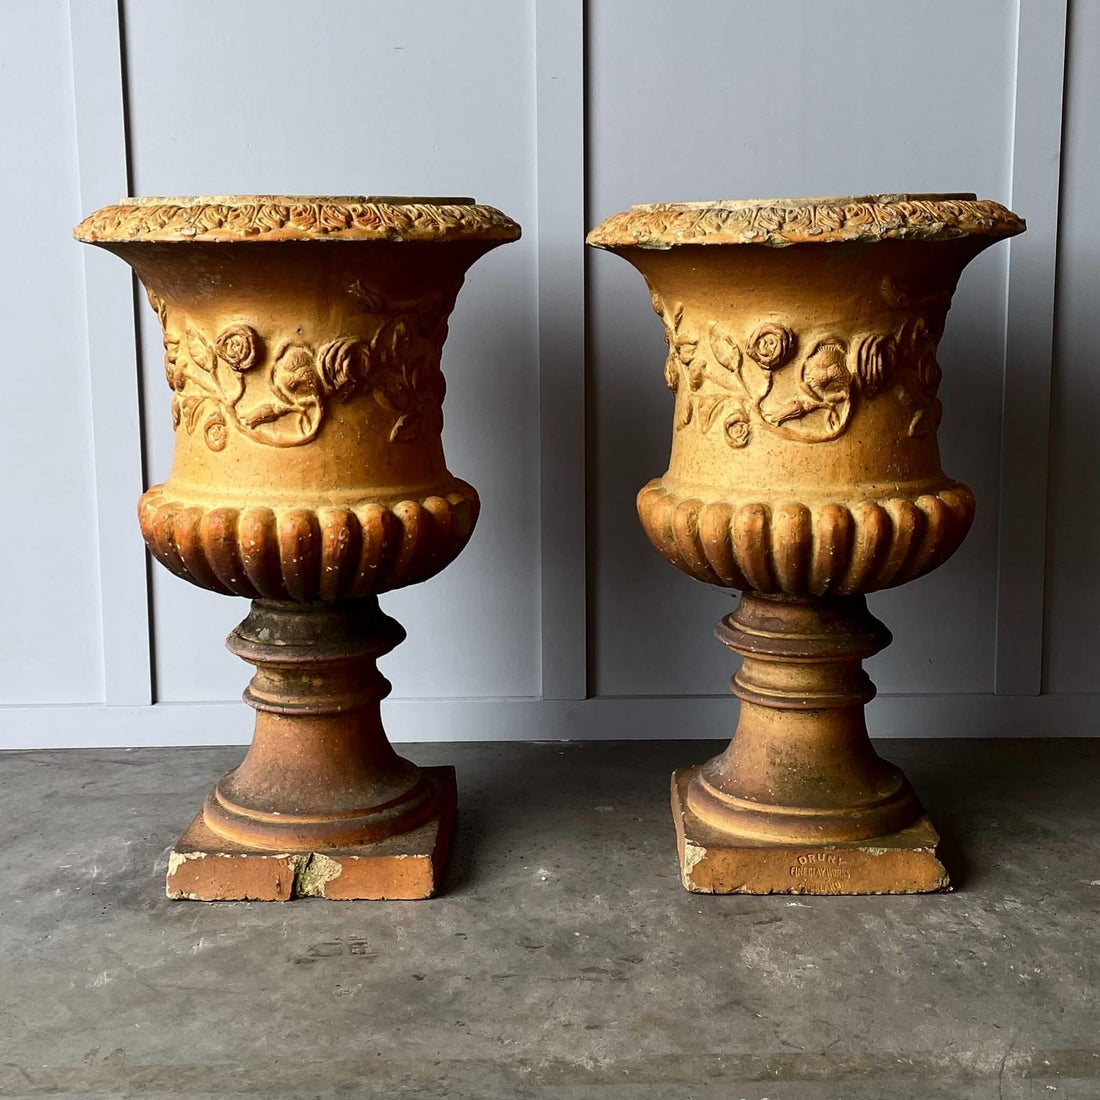 Antique garden urns